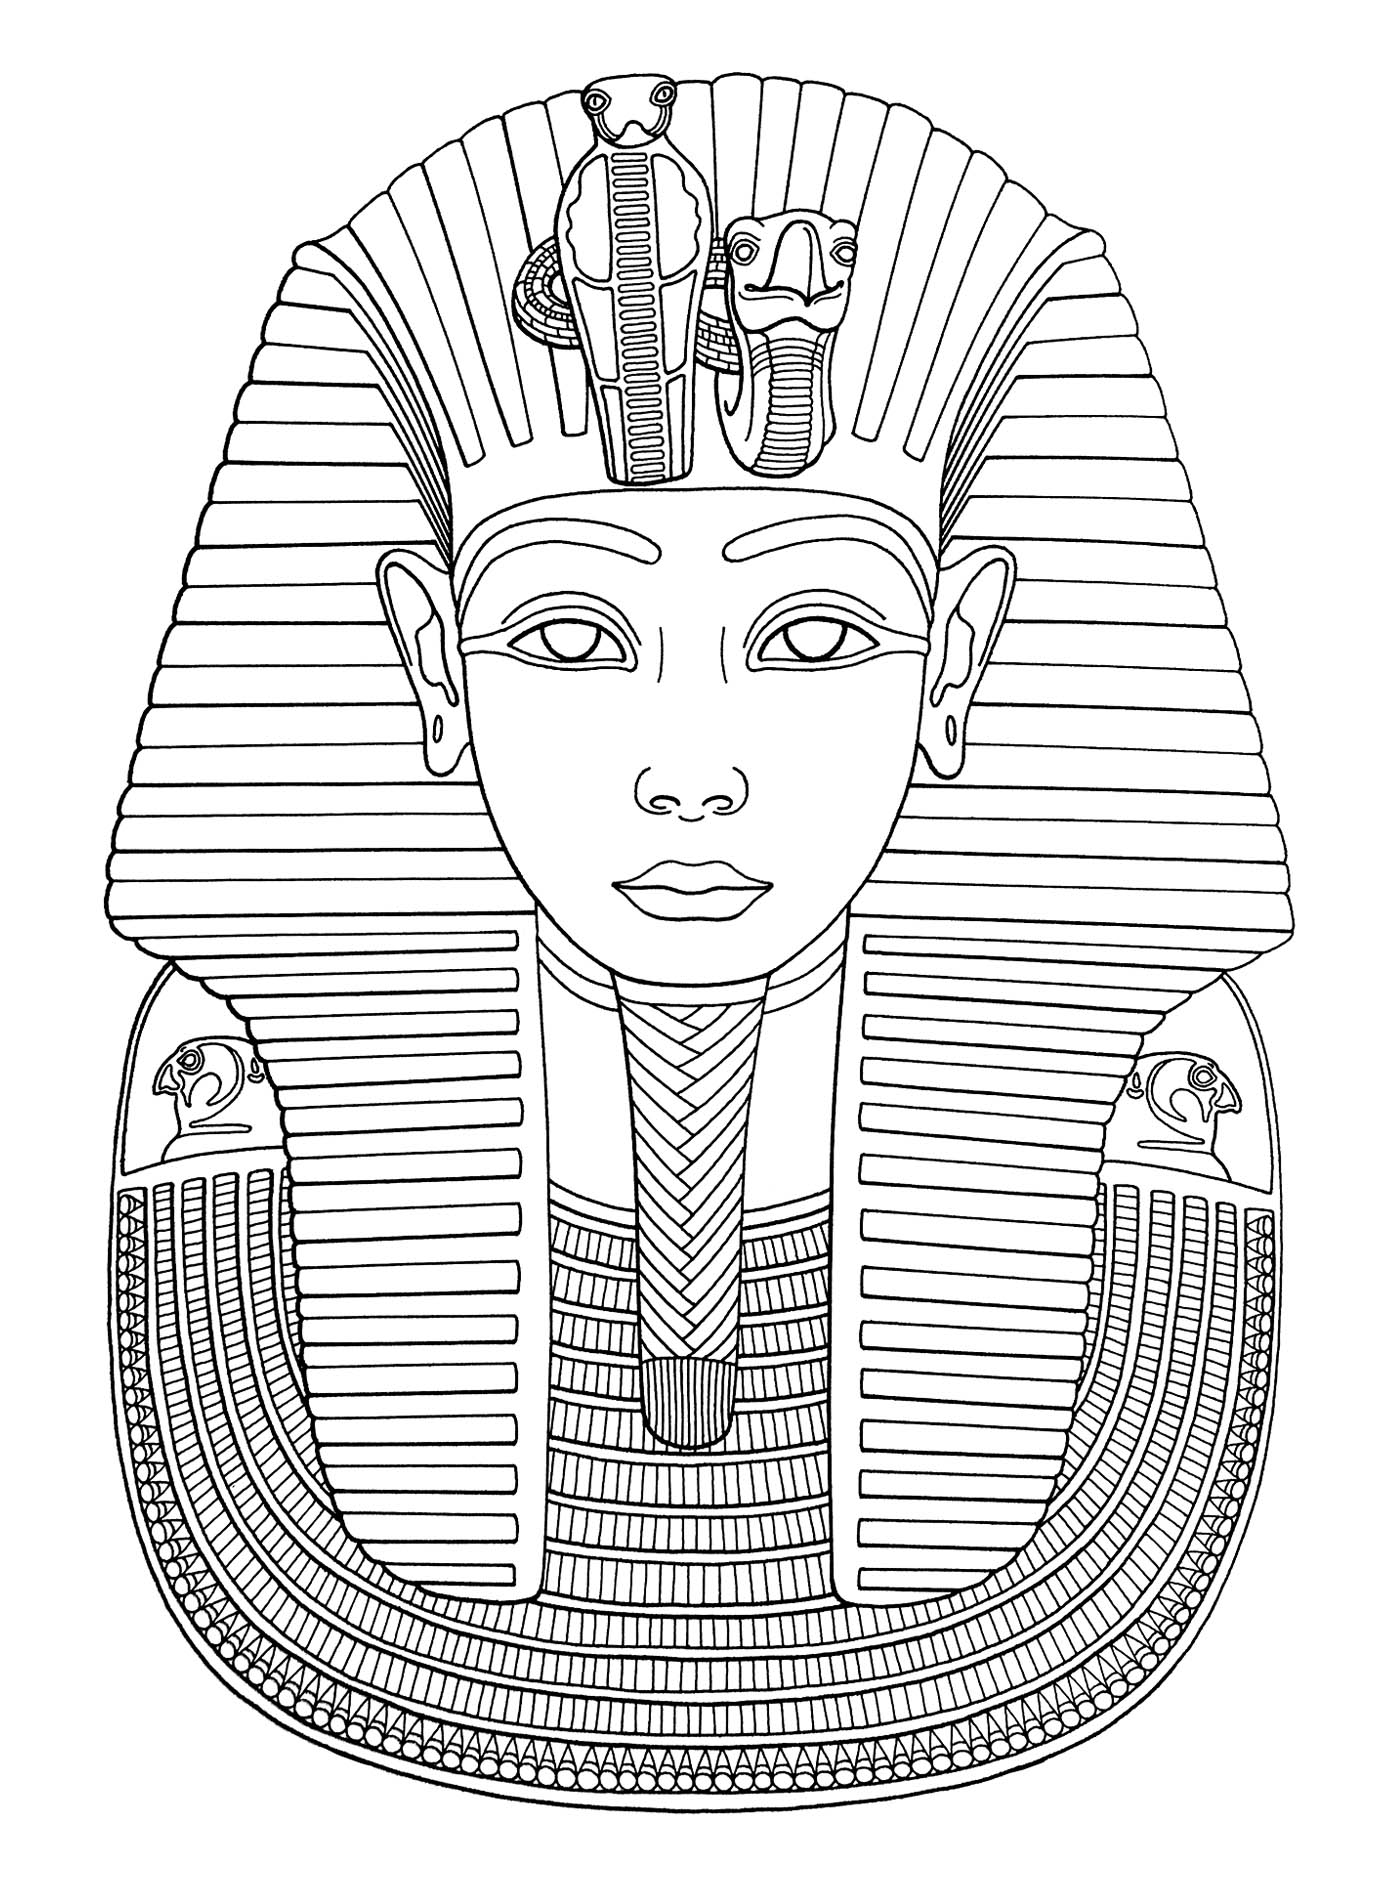 Le masque funéraire de Toutankhamon, une des plus célèbres icônes de l'Egypte antique, est certainement le masque le plus connu au monde, Artiste : Art'Isabelle